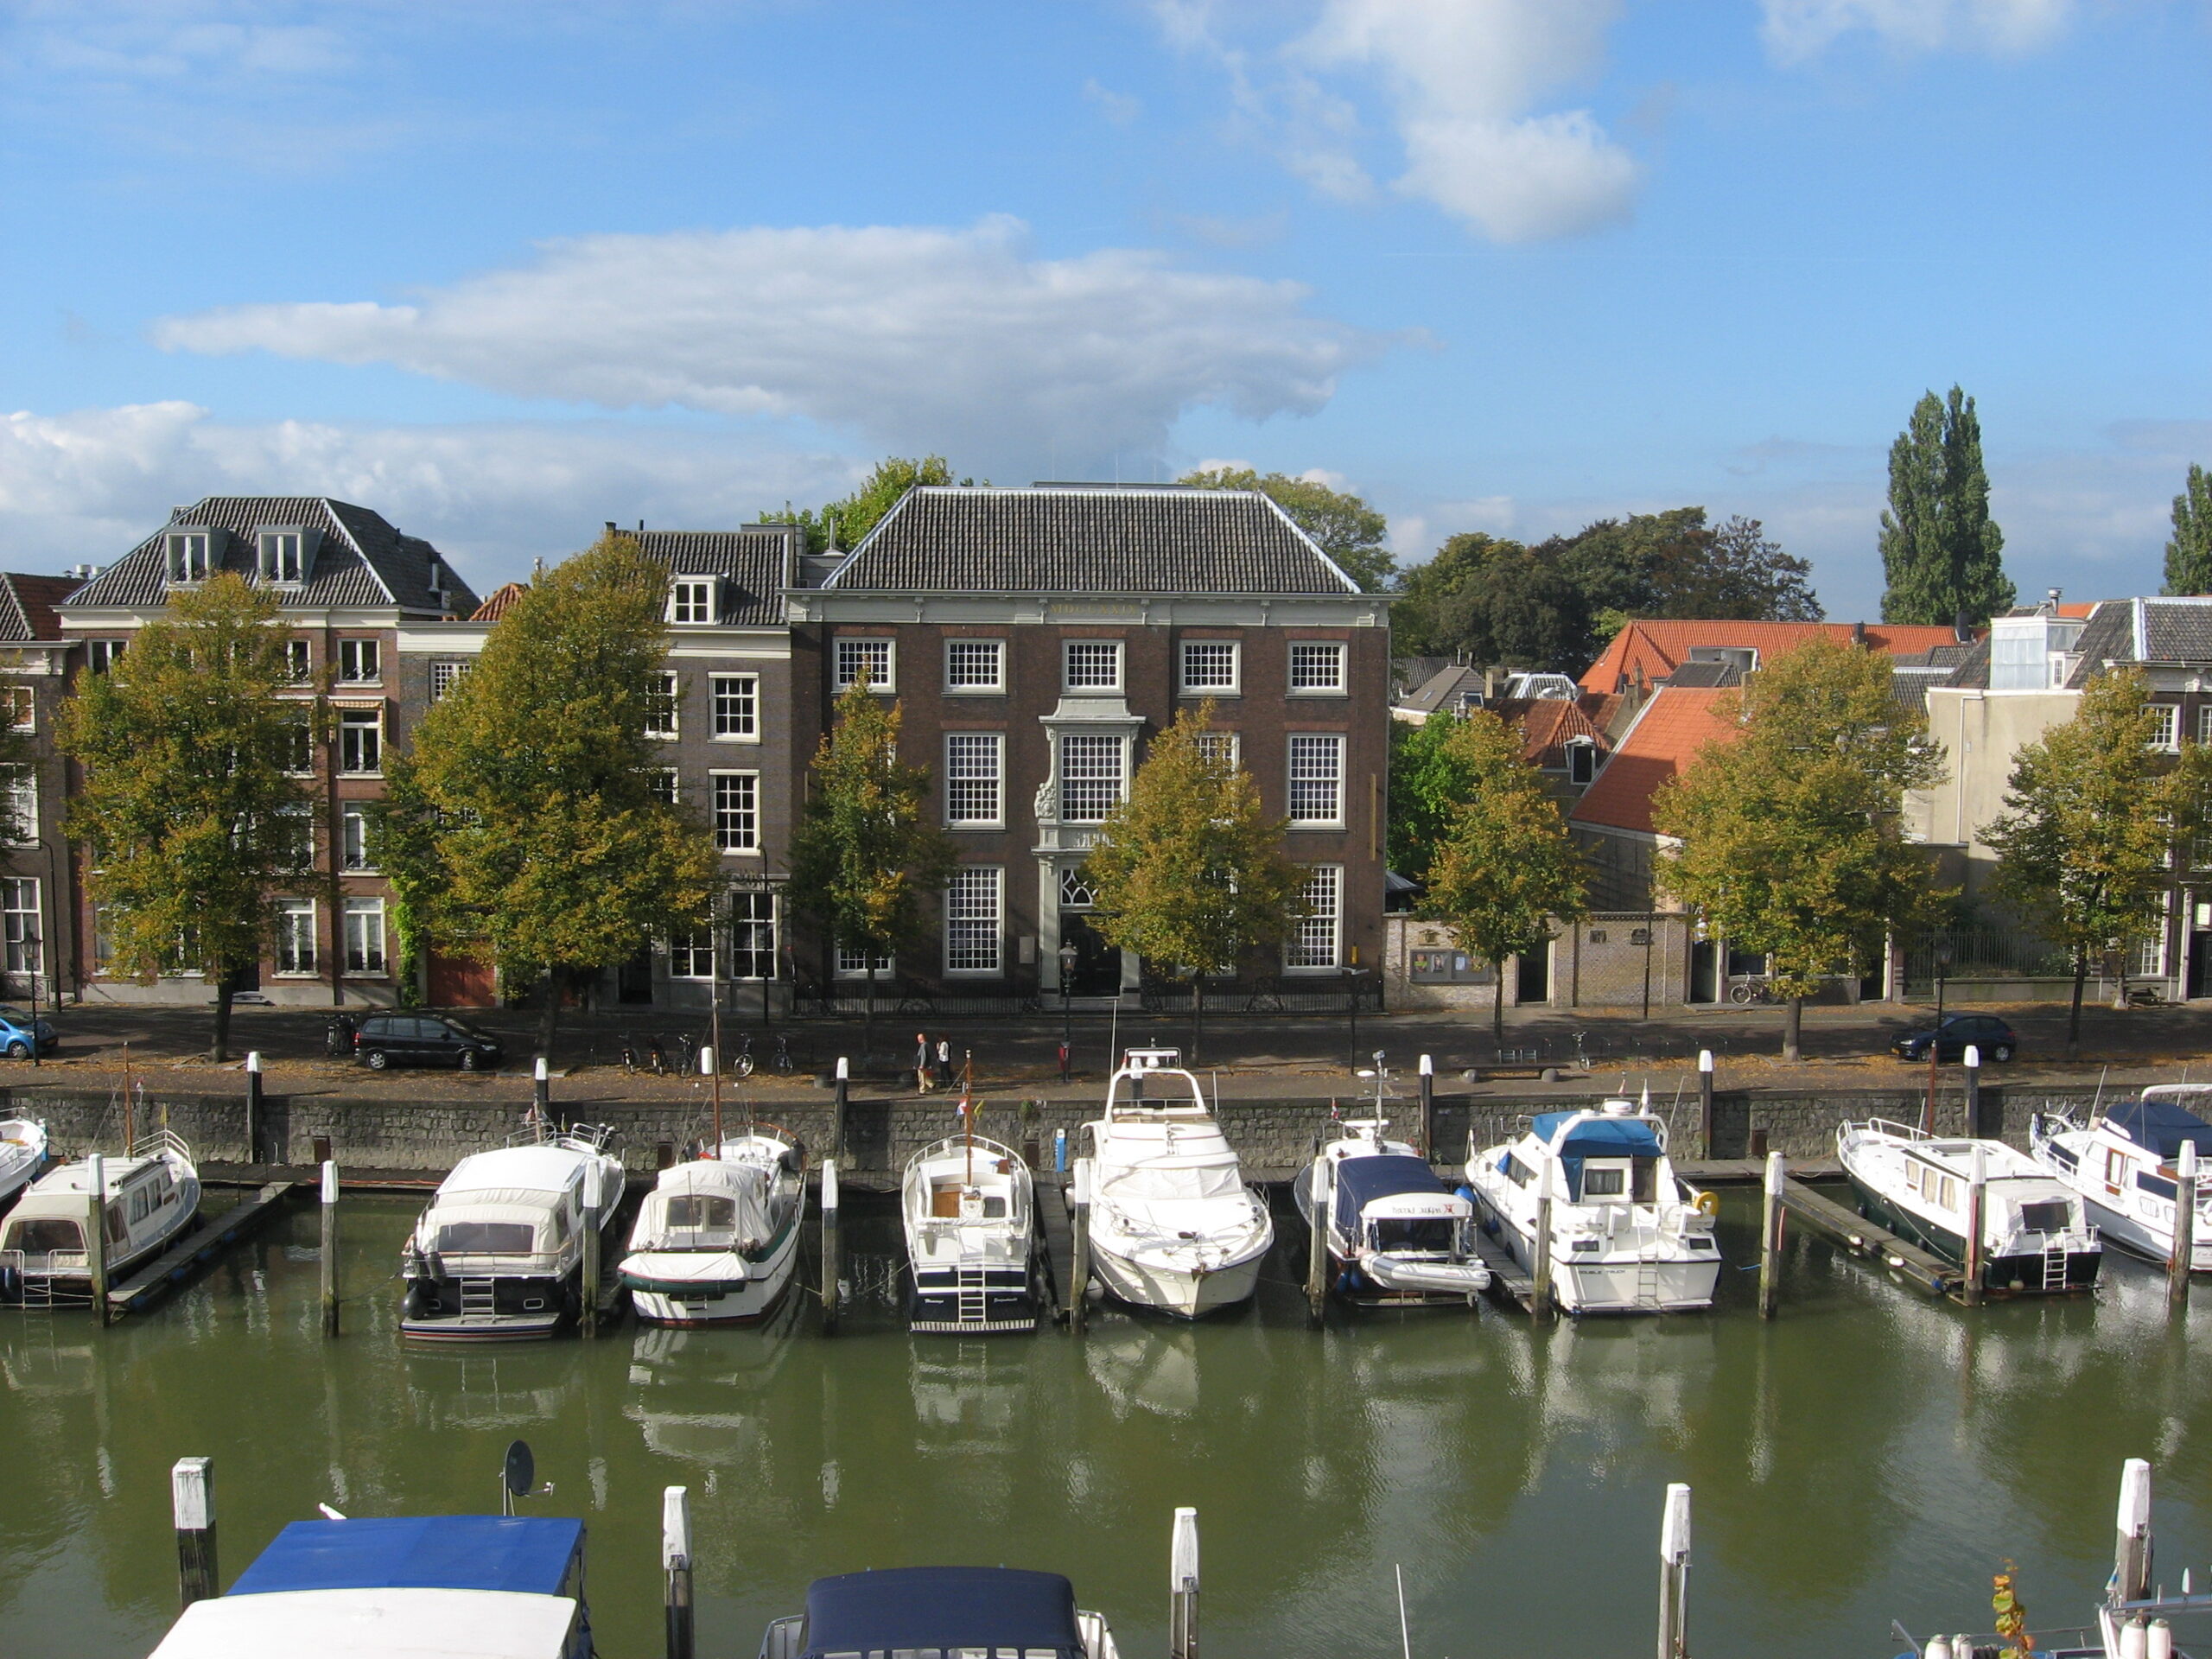 Aan een water waar de boten aan de kade liggen, staat het huis van Gijn. Een statiig gebouw van 3 verdiepingen met volop ramen aan de voorzijde.